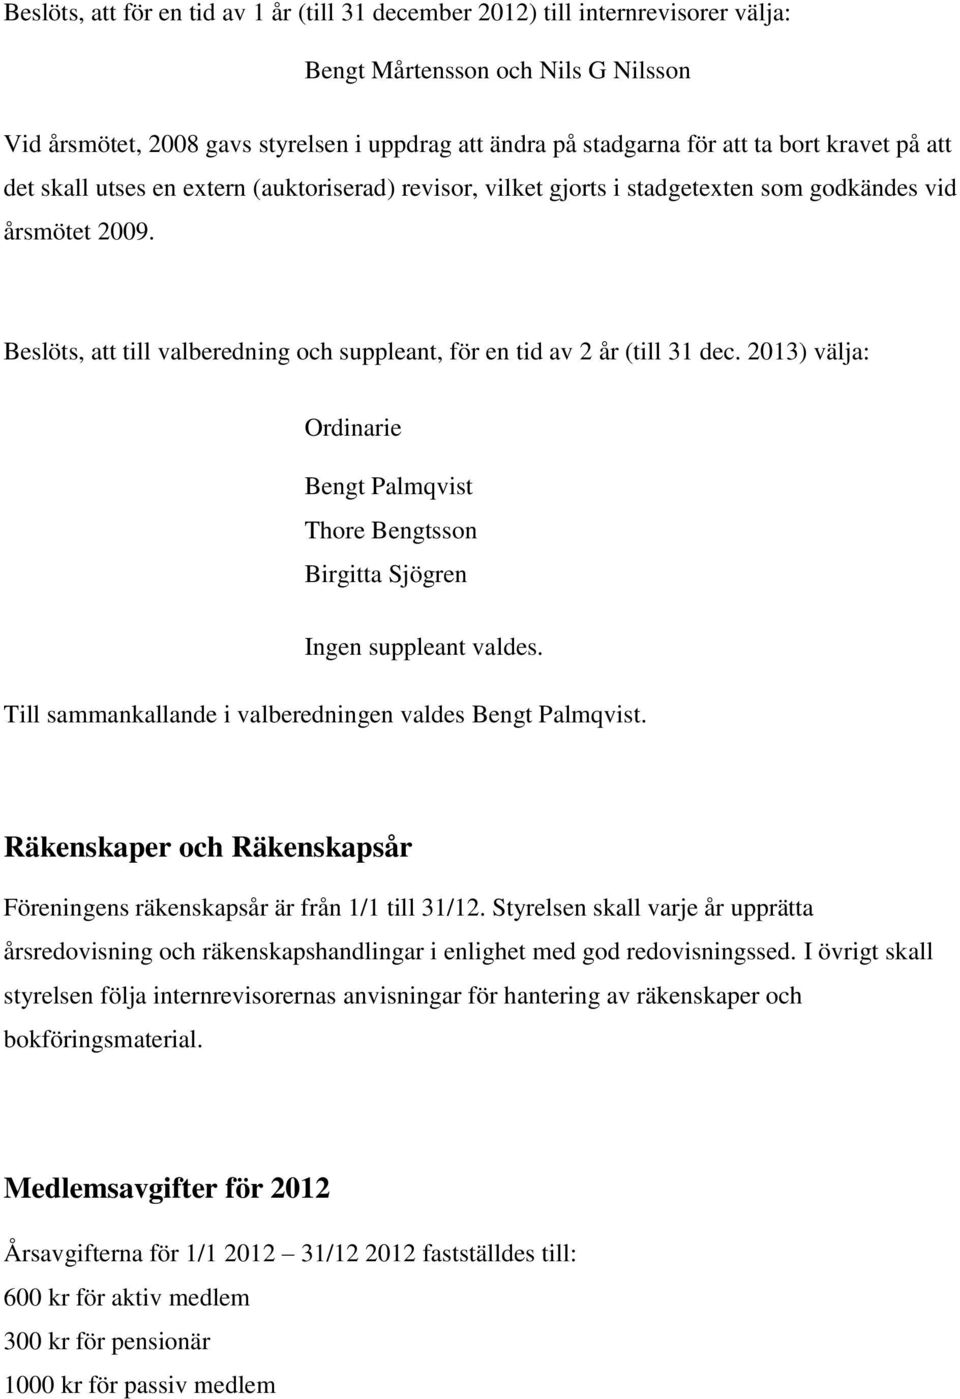 Beslöts, att till valberedning och suppleant, för en tid av 2 år (till 31 dec. 2013) välja: Ordinarie Bengt Palmqvist Thore Bengtsson Birgitta Sjögren Ingen suppleant valdes.